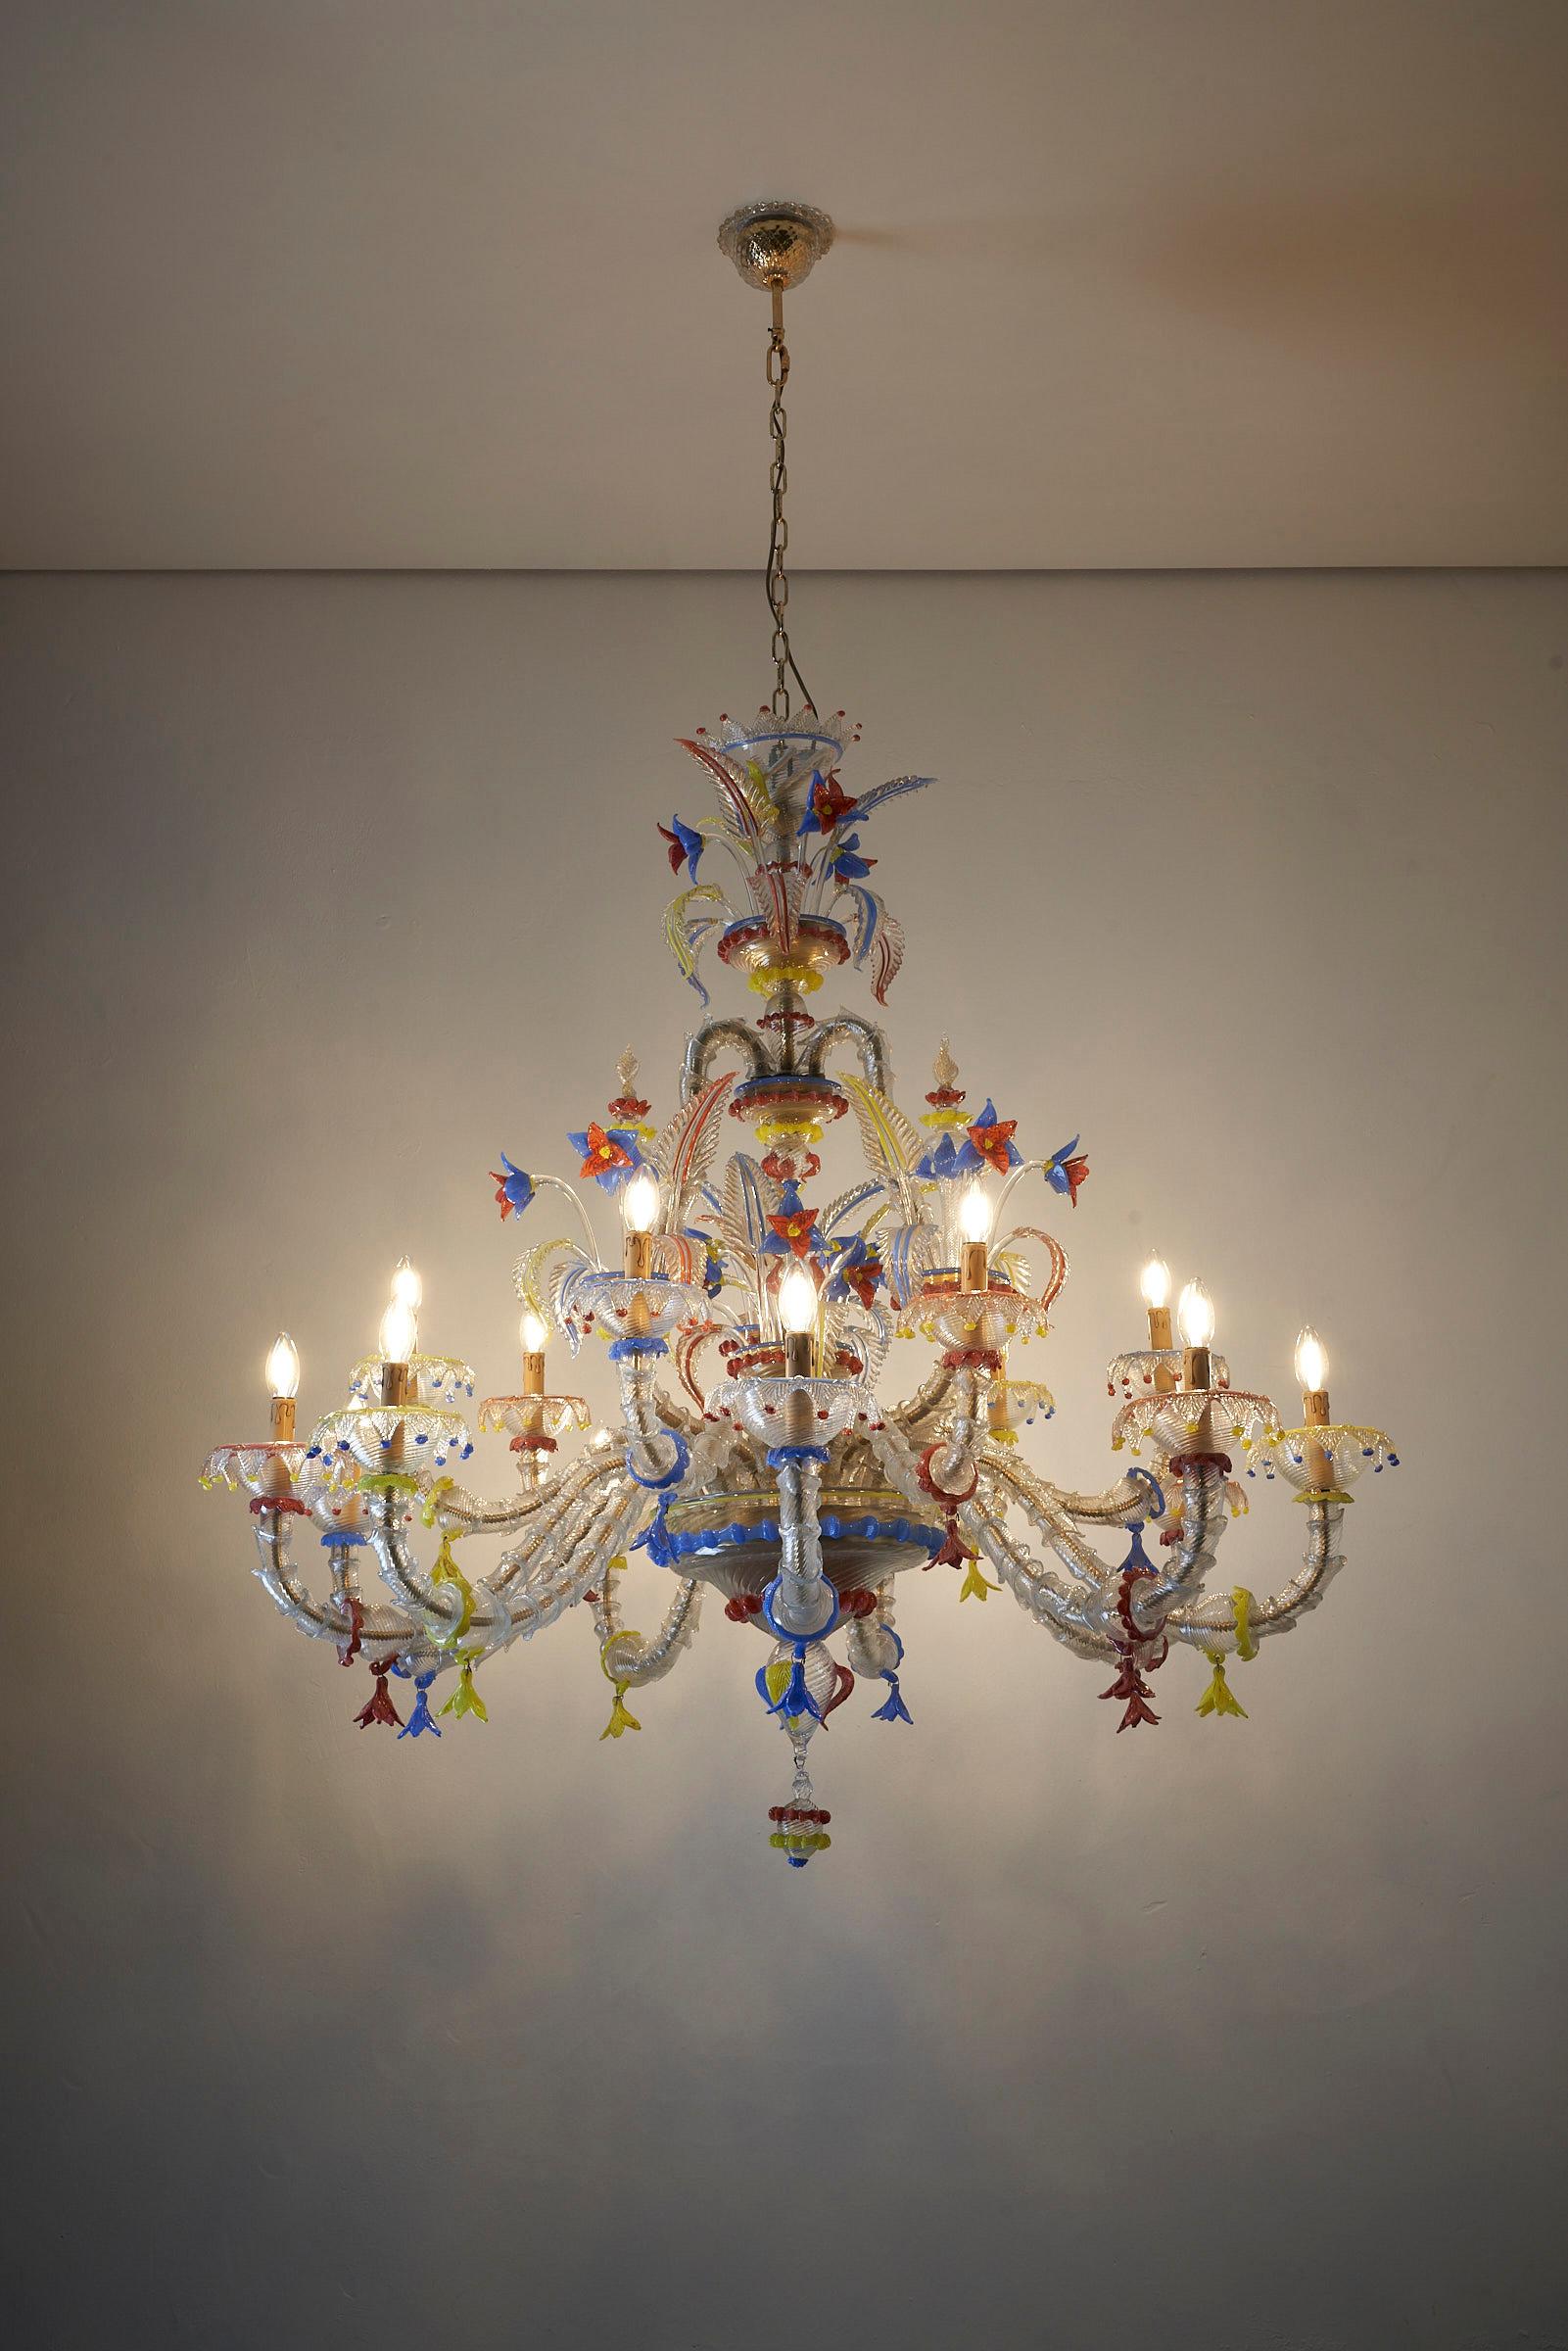 Voici le superbe lustre XL Murano Multicolore, un véritable chef-d'œuvre de l'artisanat vénitien. Avec sa grandeur et son élégance, ce lustre attire l'attention et ajoute une touche d'opulence à tout espace.

Doté de 15 bras exquis, ce lustre met en